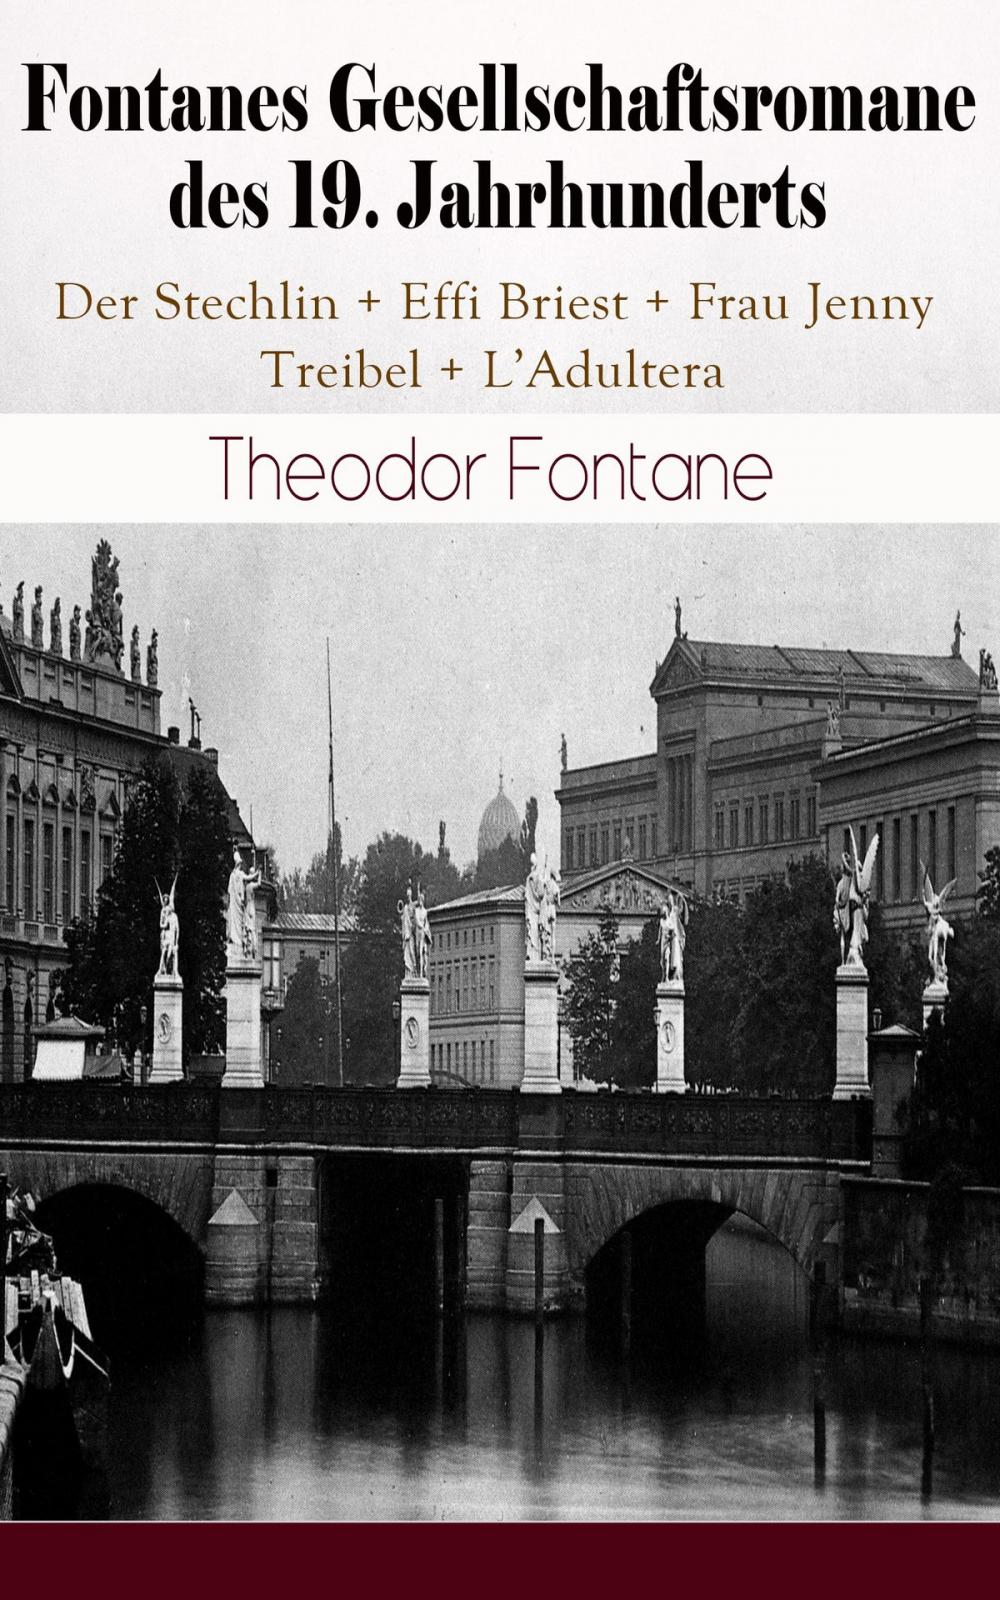 Big bigCover of Fontanes Gesellschaftsromane des 19. Jahrhunderts: Der Stechlin + Effi Briest + Frau Jenny Treibel + L'Adultera